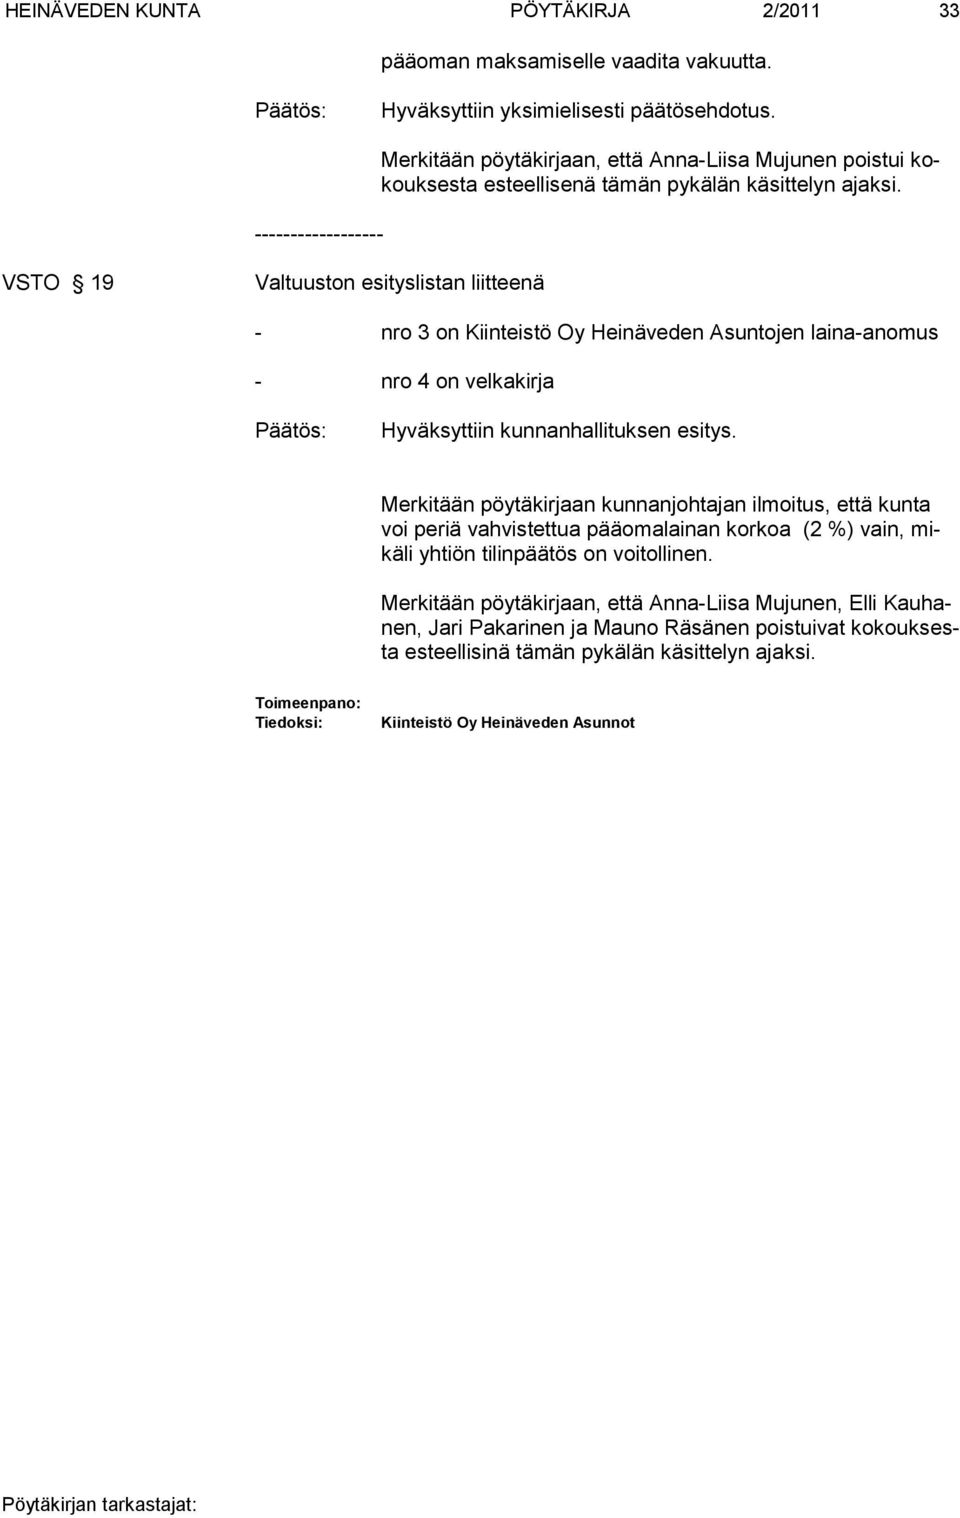 VSTO 19 Valtuuston esityslistan liitteenä - nro 3 on Kiinteistö Oy Heinäveden Asuntojen laina-anomus - nro 4 on velkakirja Hyväksyttiin kunnanhallituksen esitys.